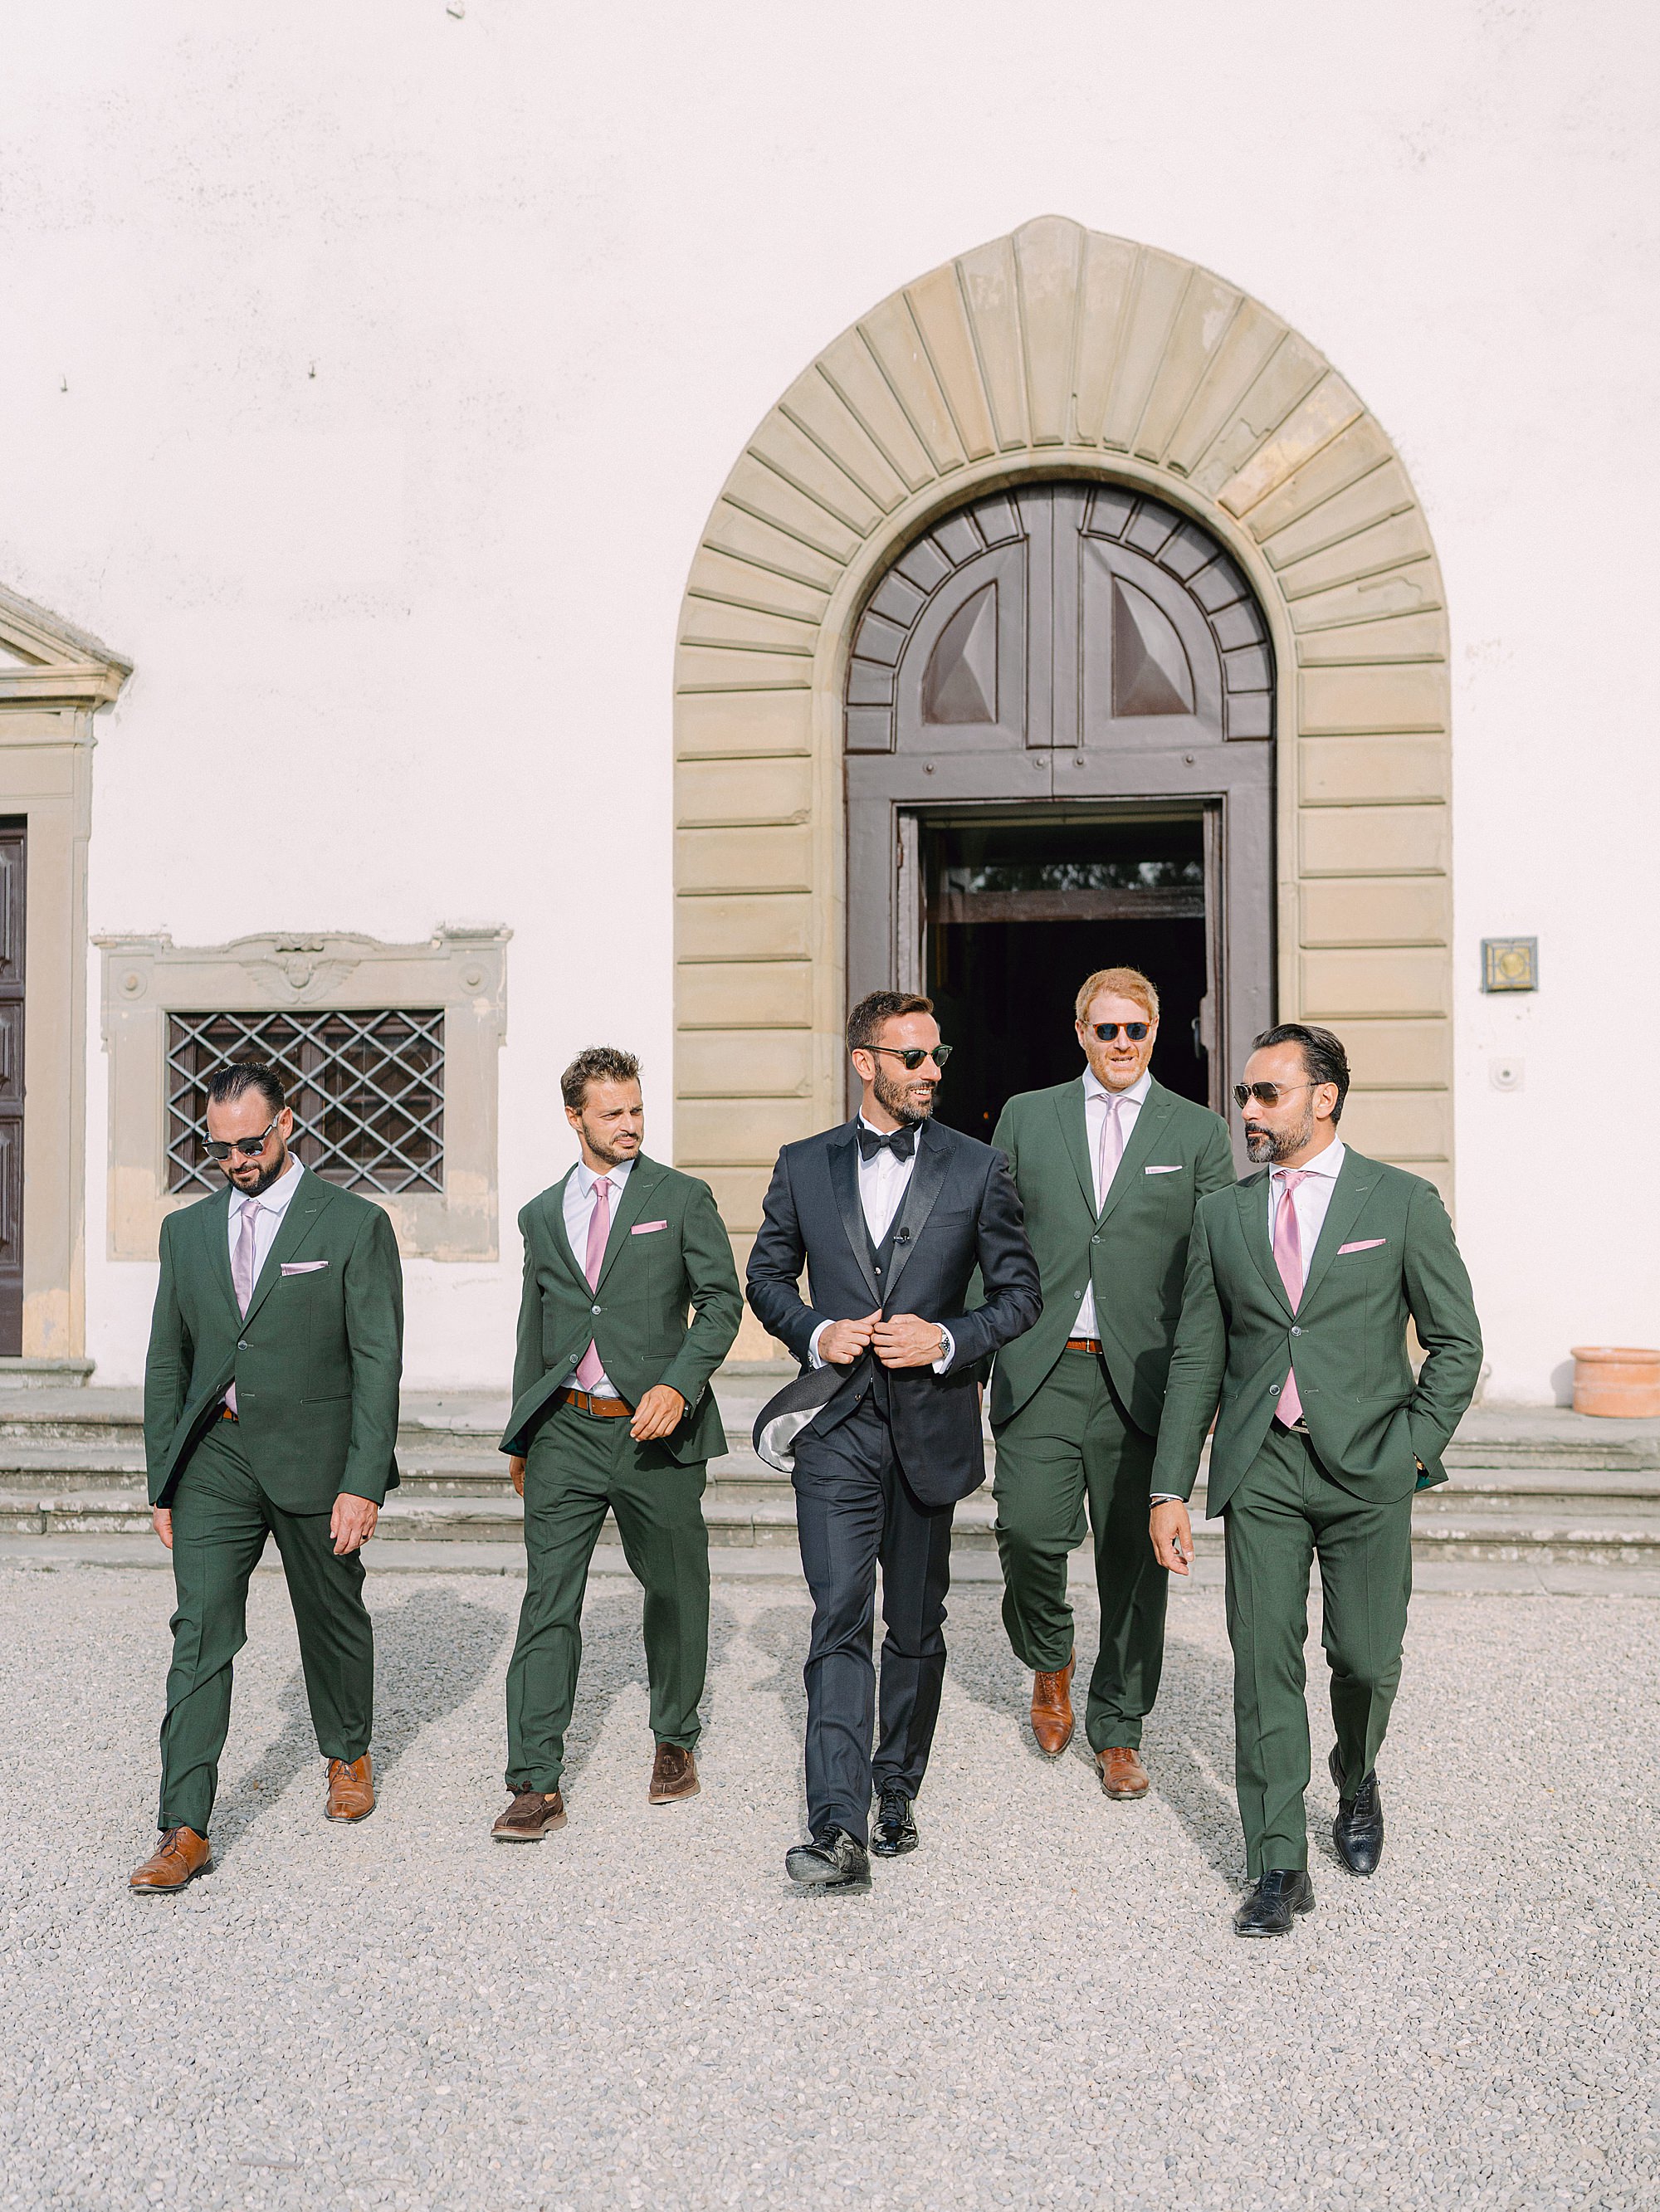 Tuscany Wedding Photographer Italy